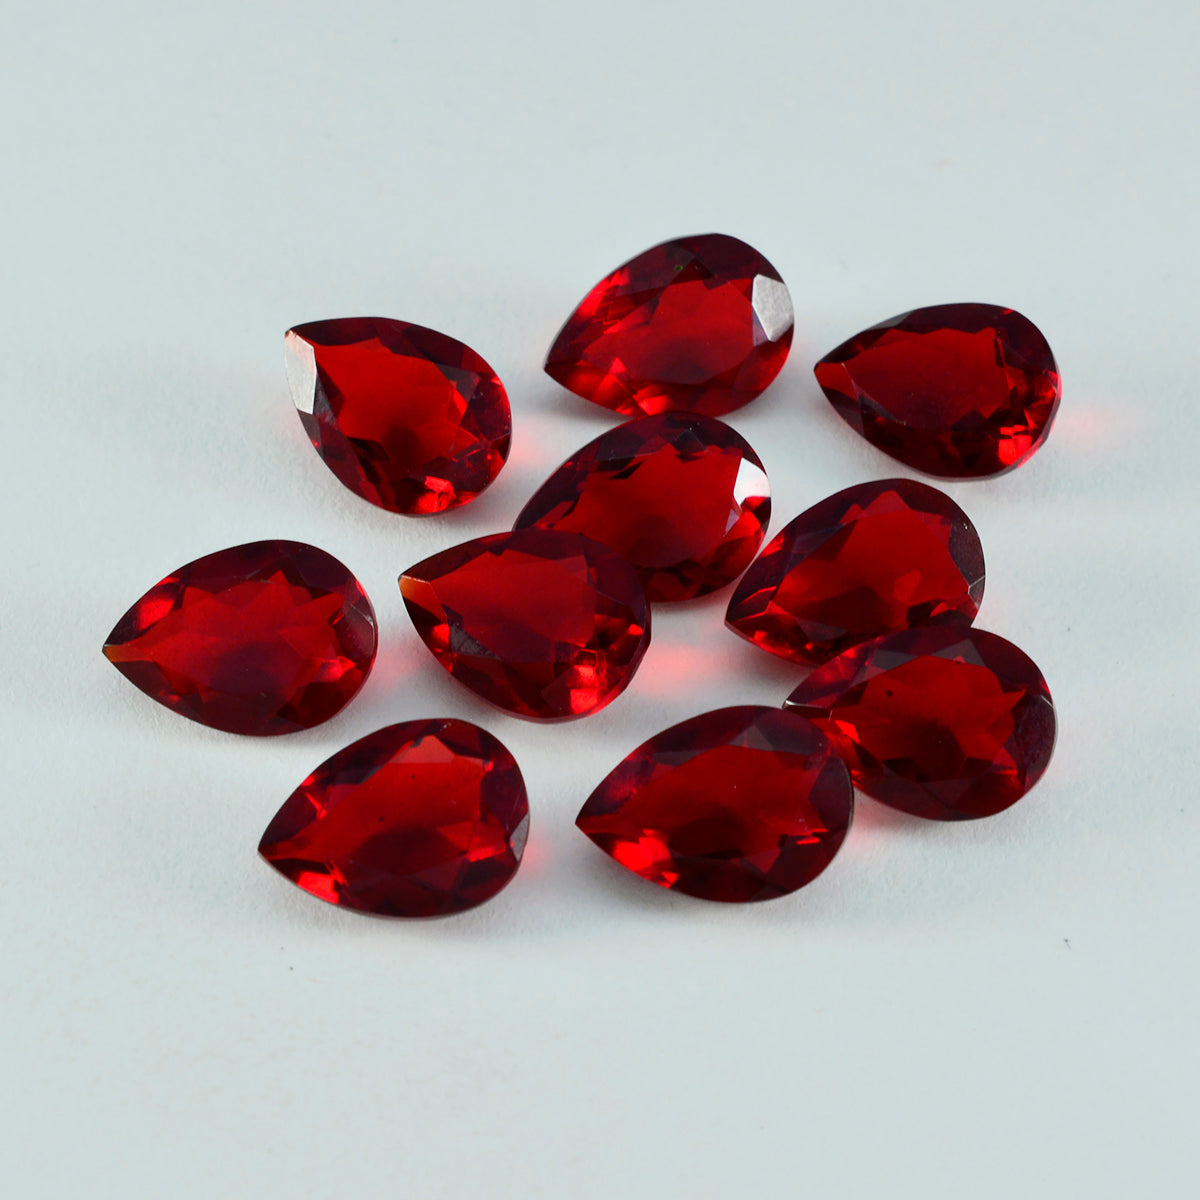 riyogems 1 шт. красный рубин cz граненый 6x9 мм грушевидной формы красивый качественный драгоценный камень